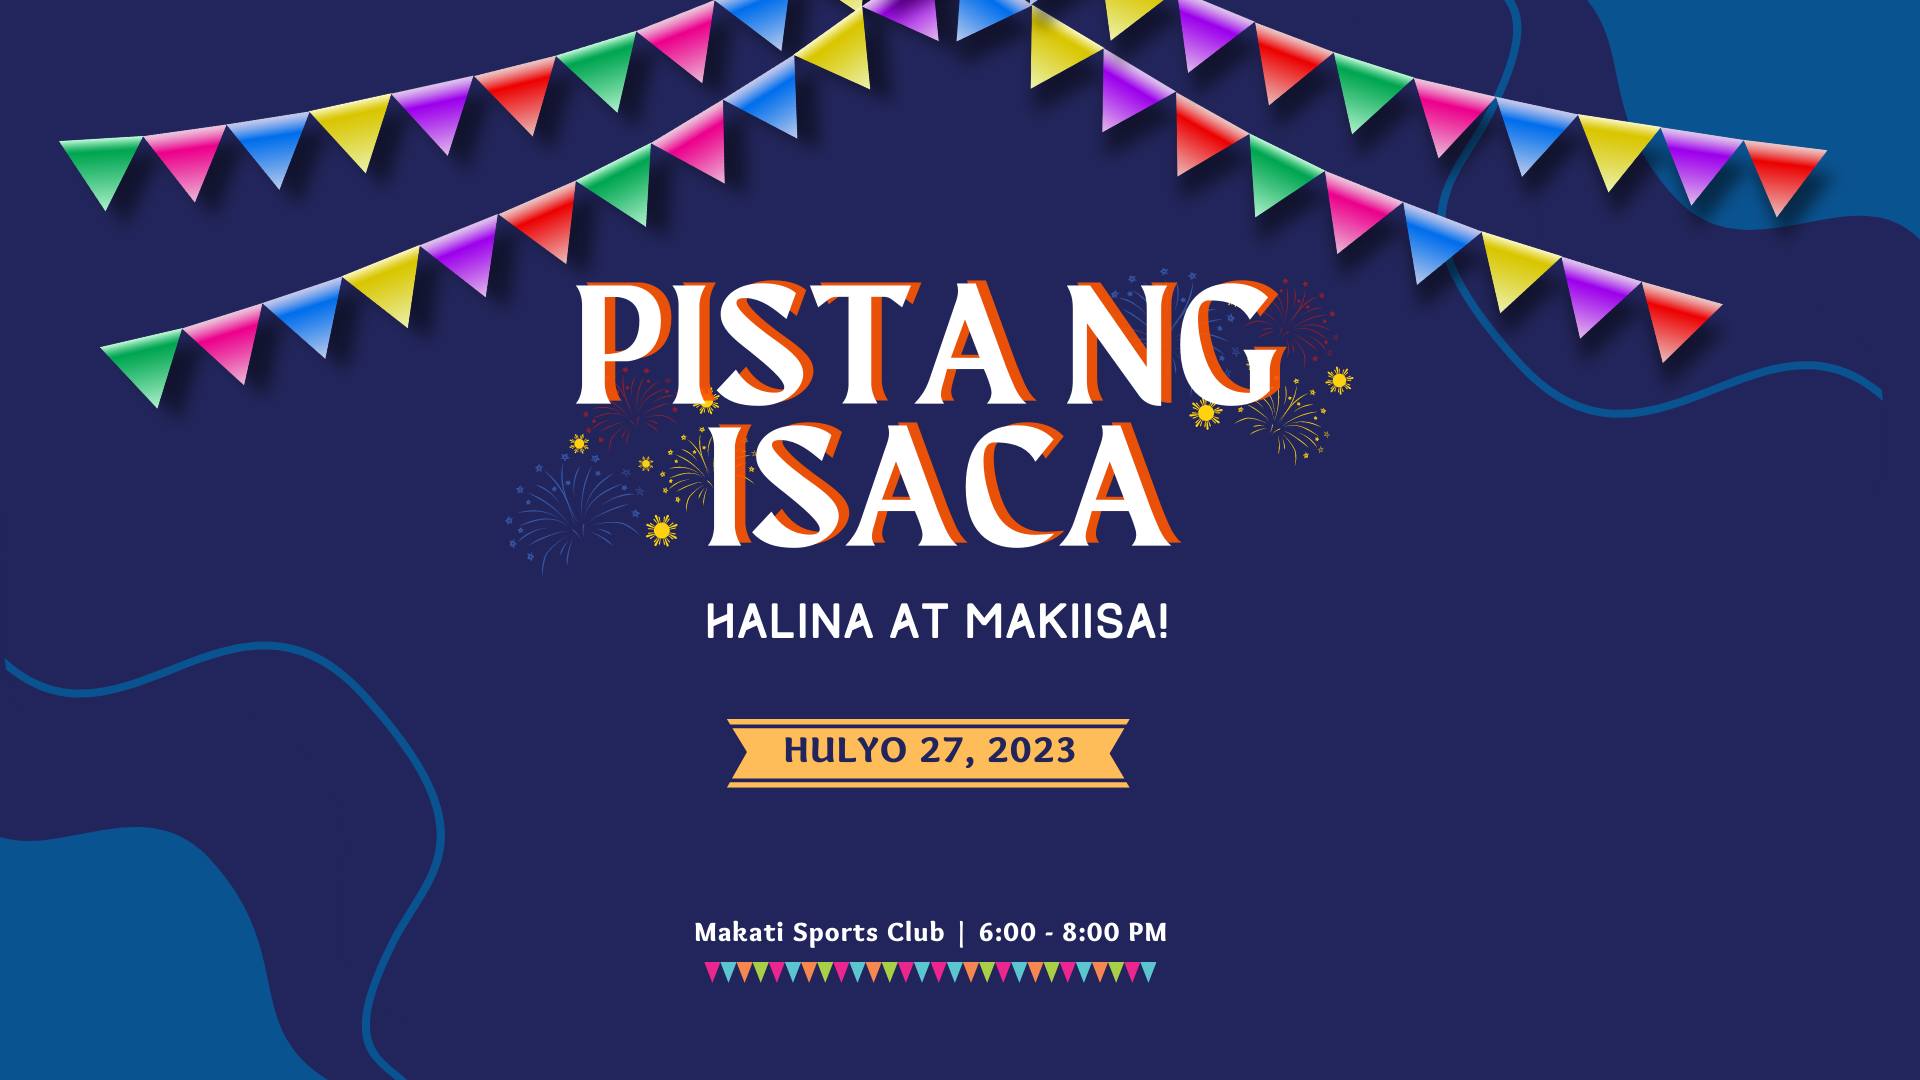 “Pista ng ISACA” – ISACA Manila Chapter ‘s 2nd General Membership Meeting